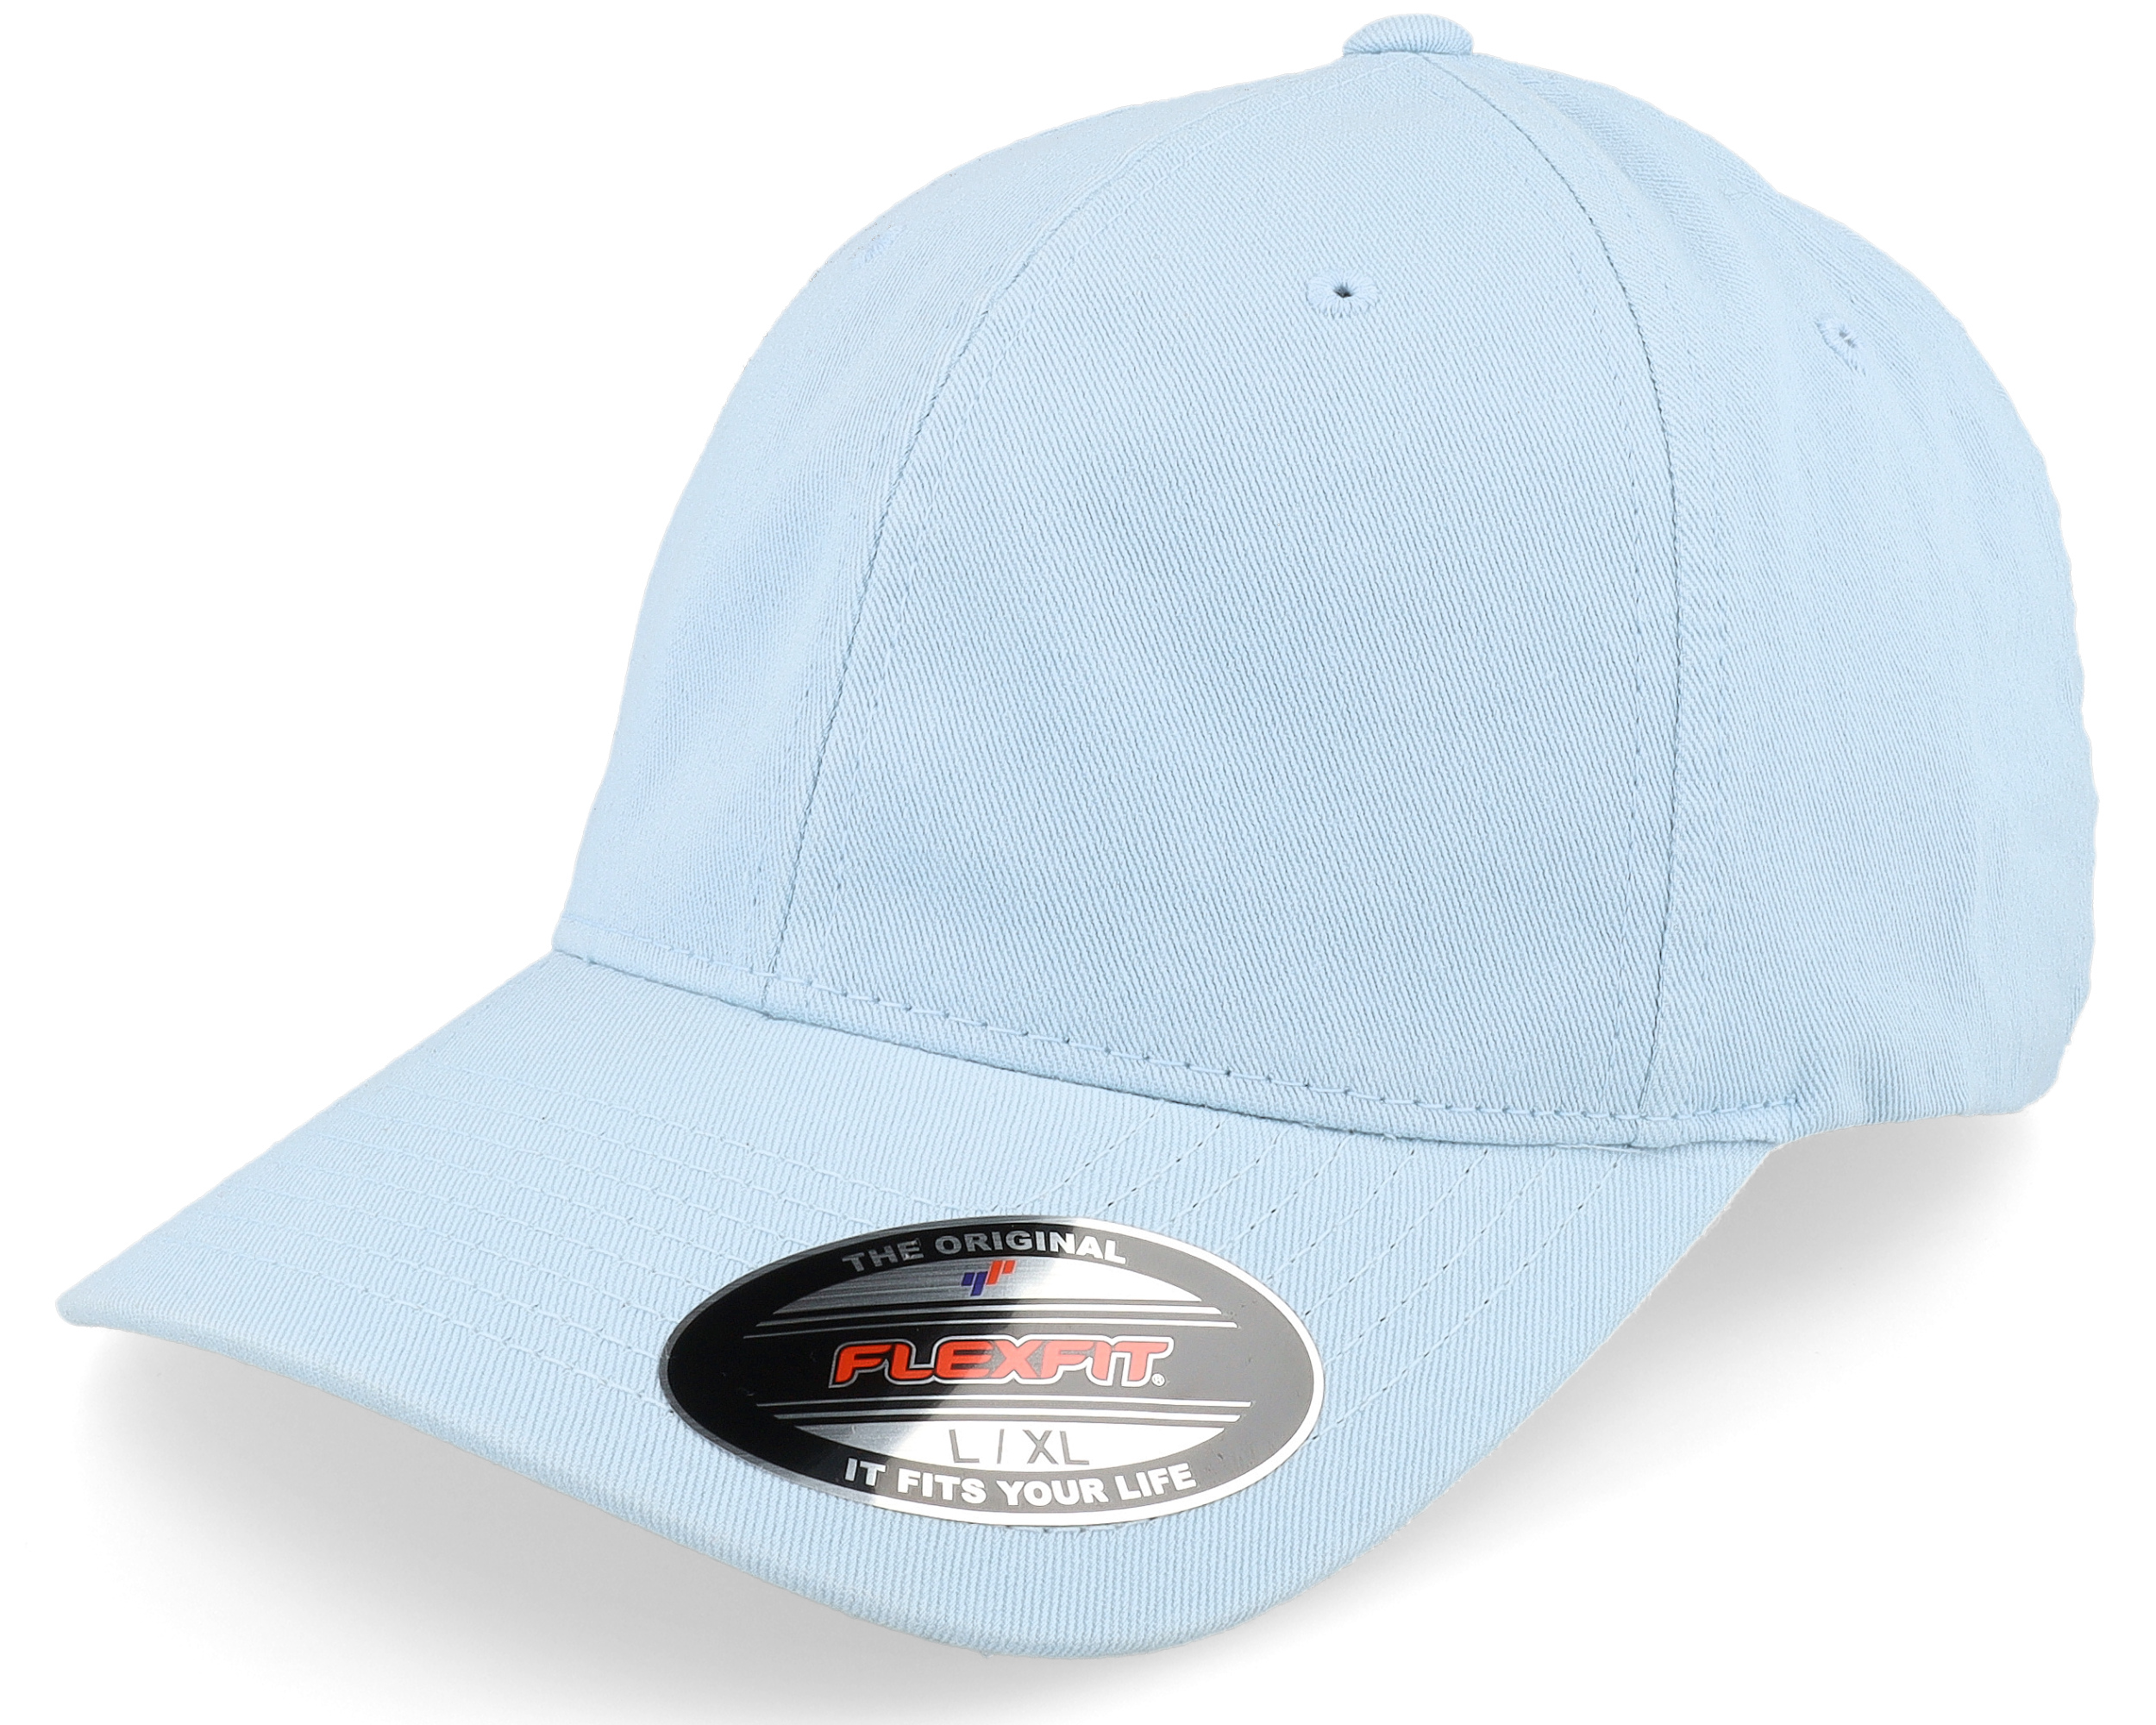 Dad cap Flexfit Light Blue Cotton - Washed Cap